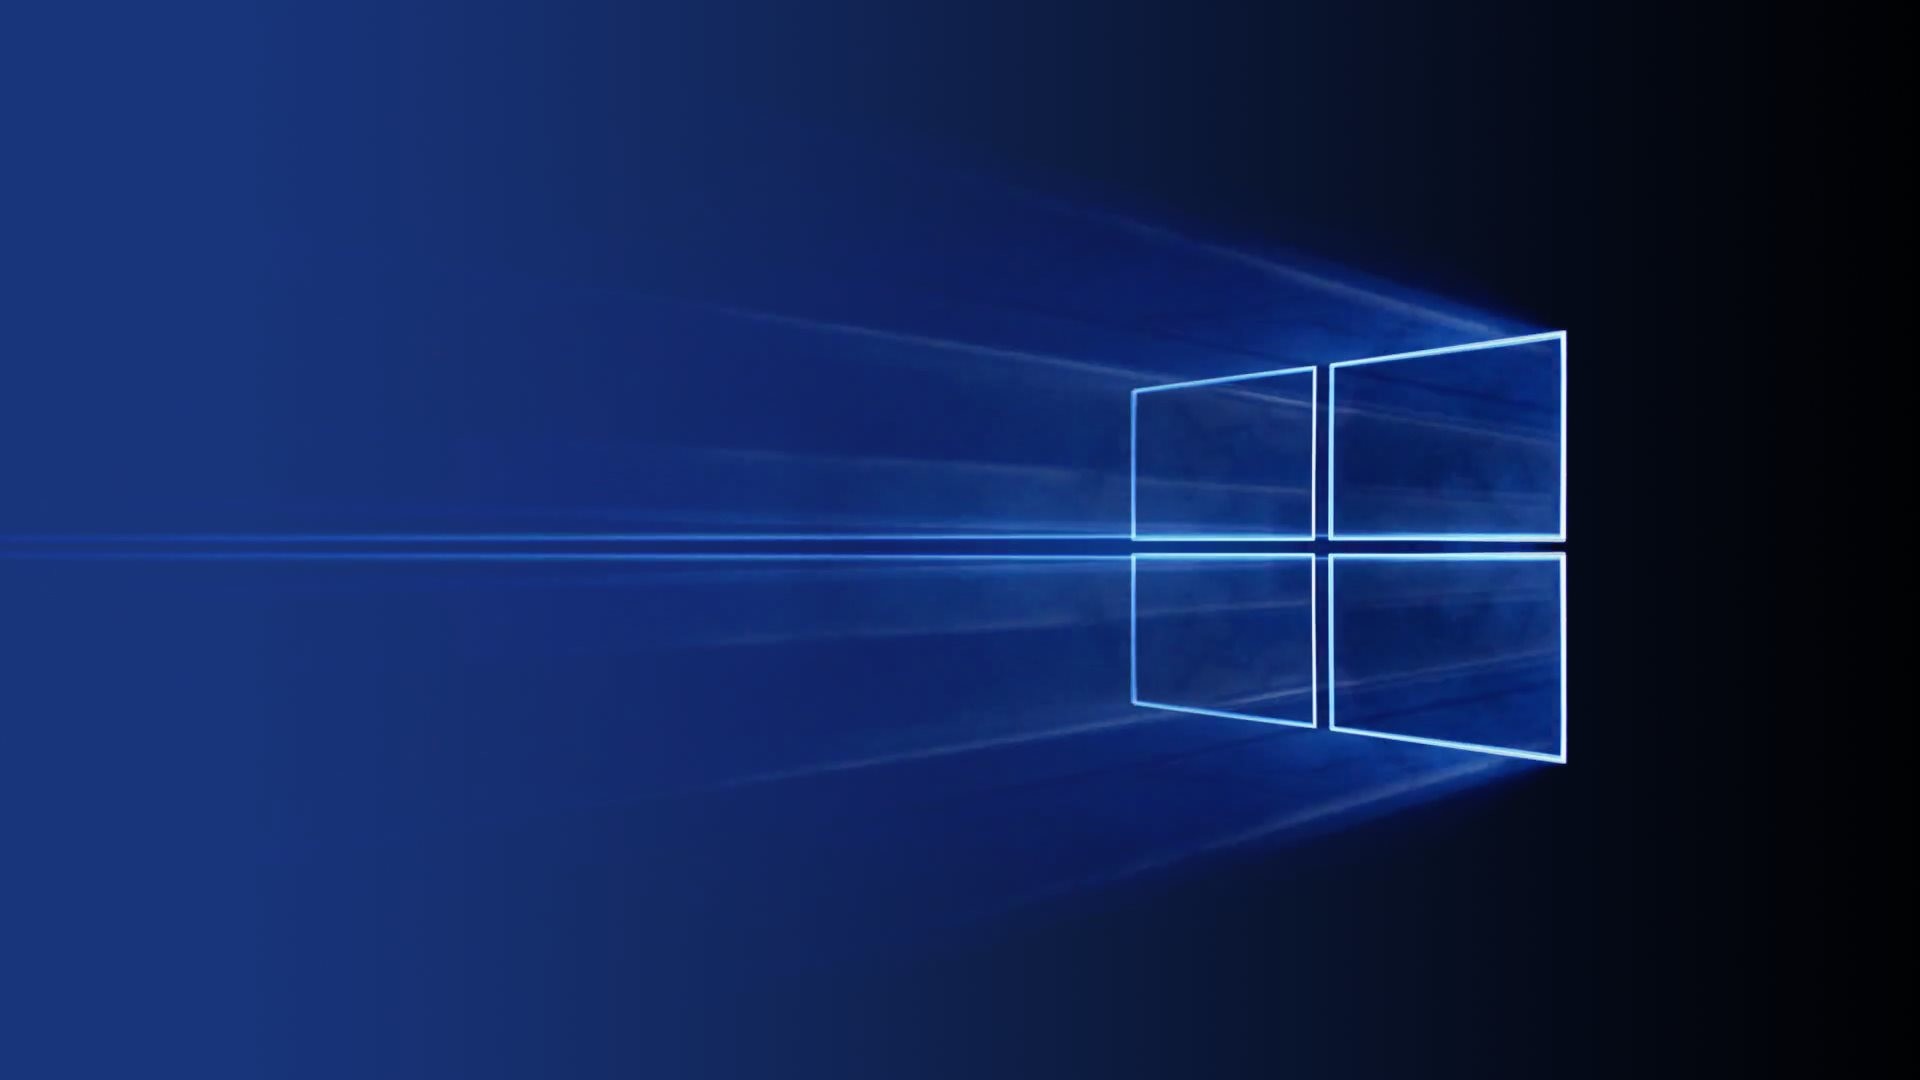 Microsoft Desktop Backgrounds (59+ images)